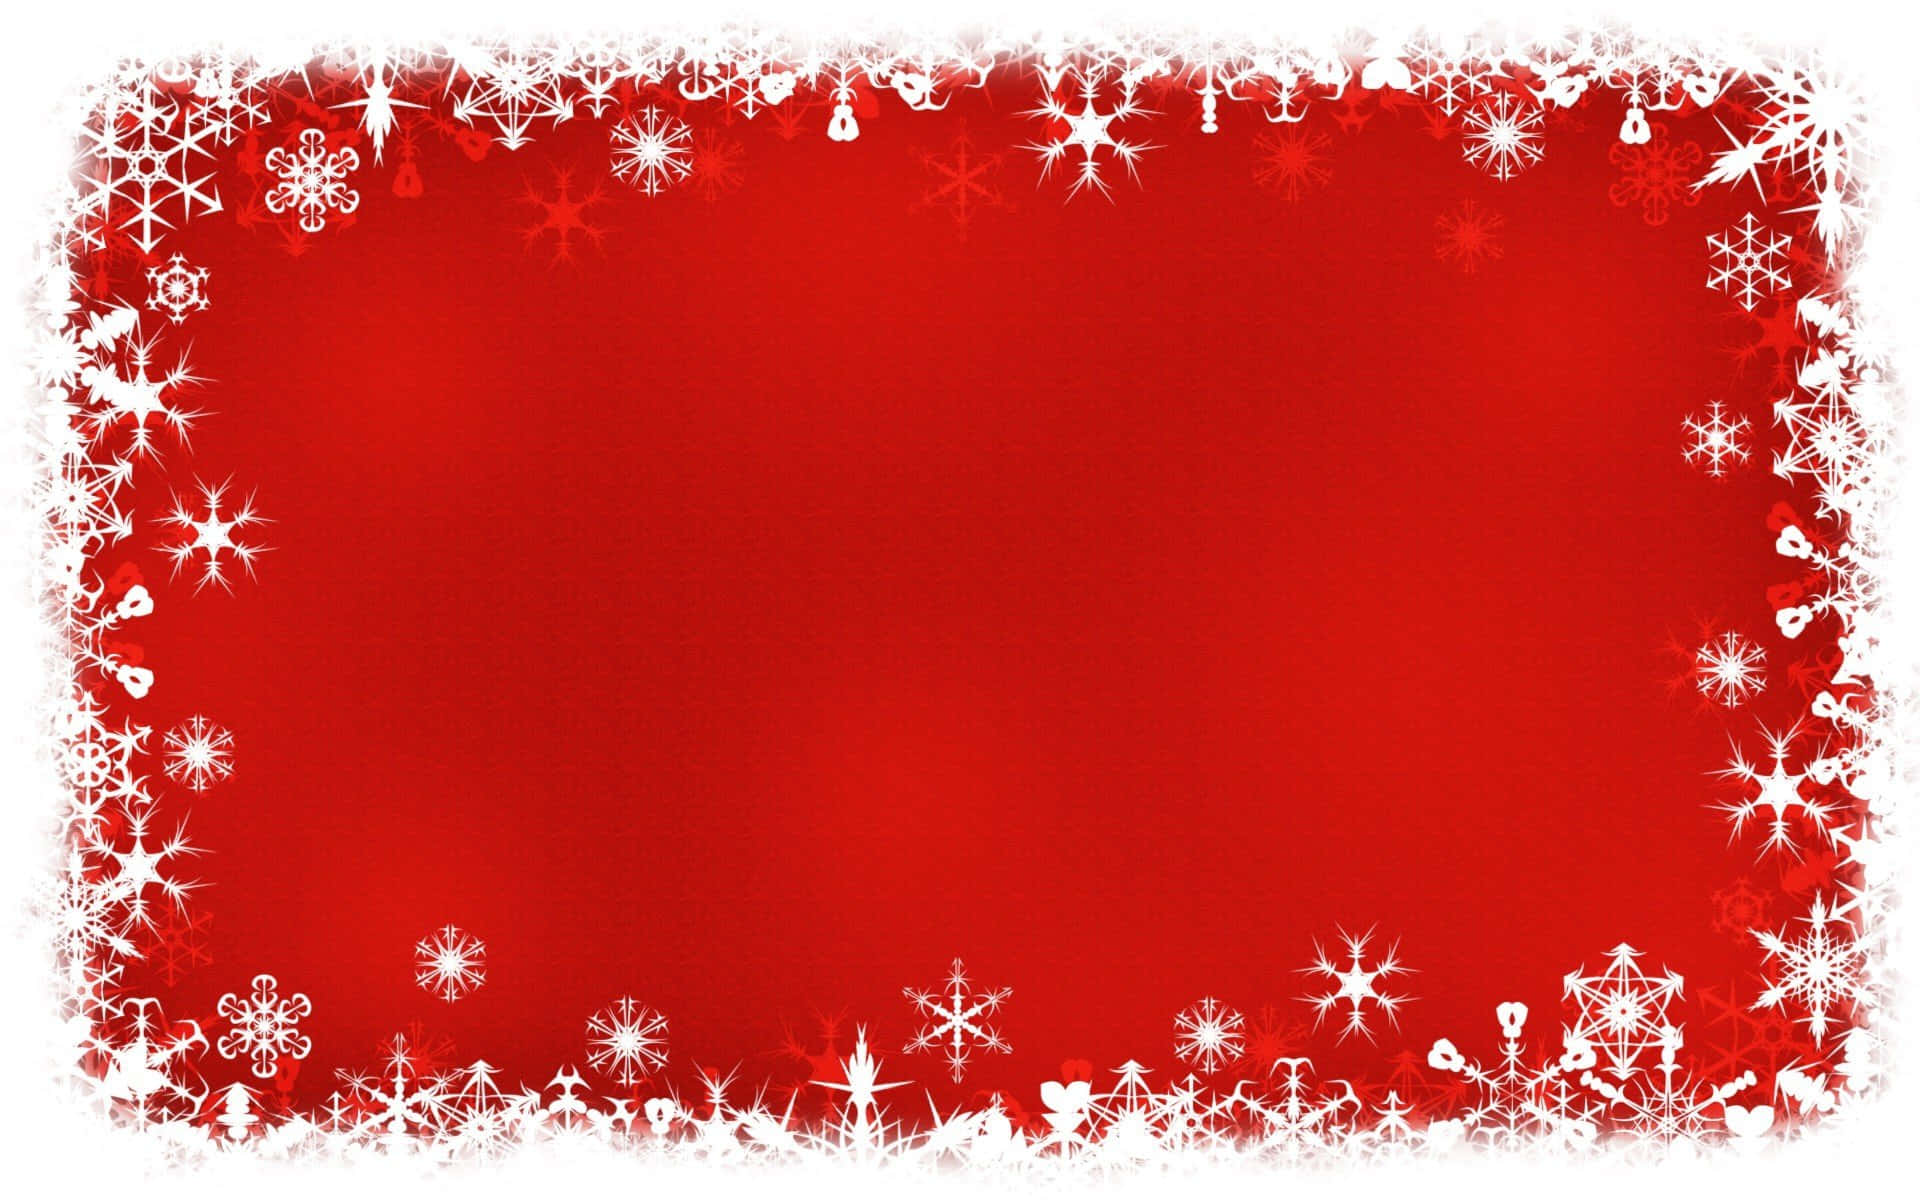 Unosfondo Festivo Per Powerpoint Di Natale Con Luci, Neve E Ornamenti.